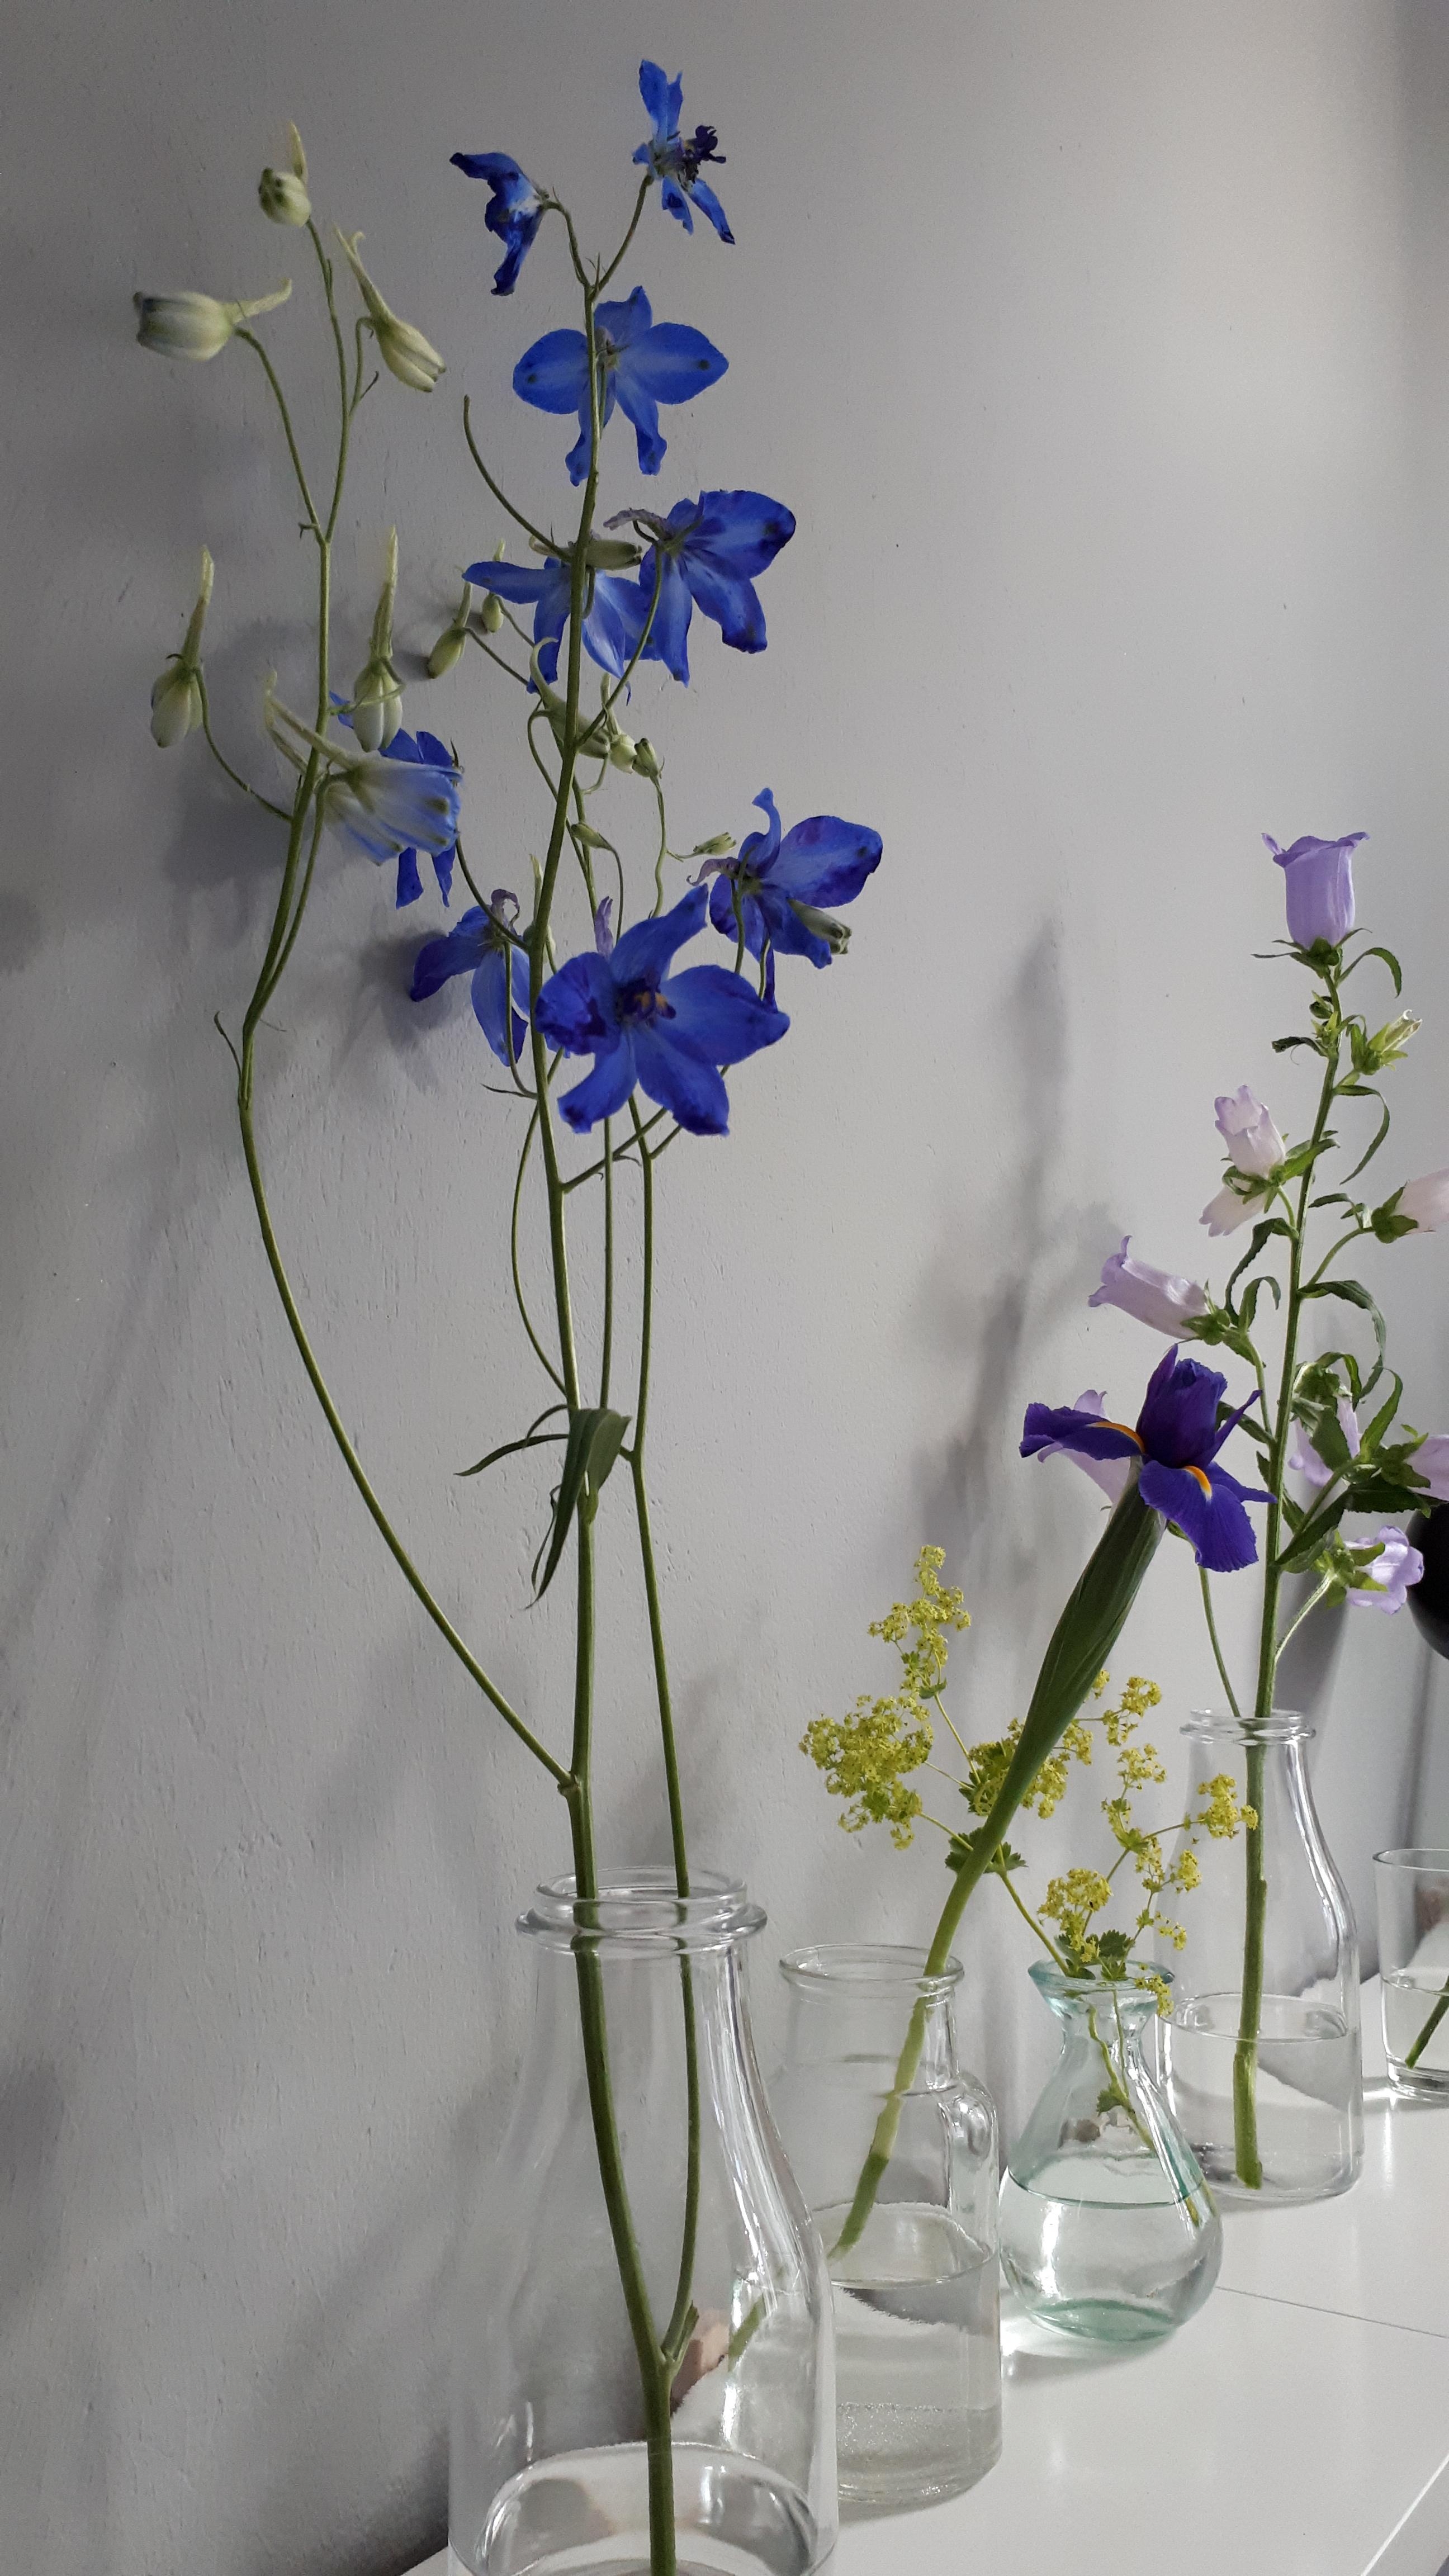 💐💐💐
#Vielfalt #Blumen #Vasen #Regal #Schlafzimmer #Wohnzimmer #Altbau #Altbauliebe #DIY